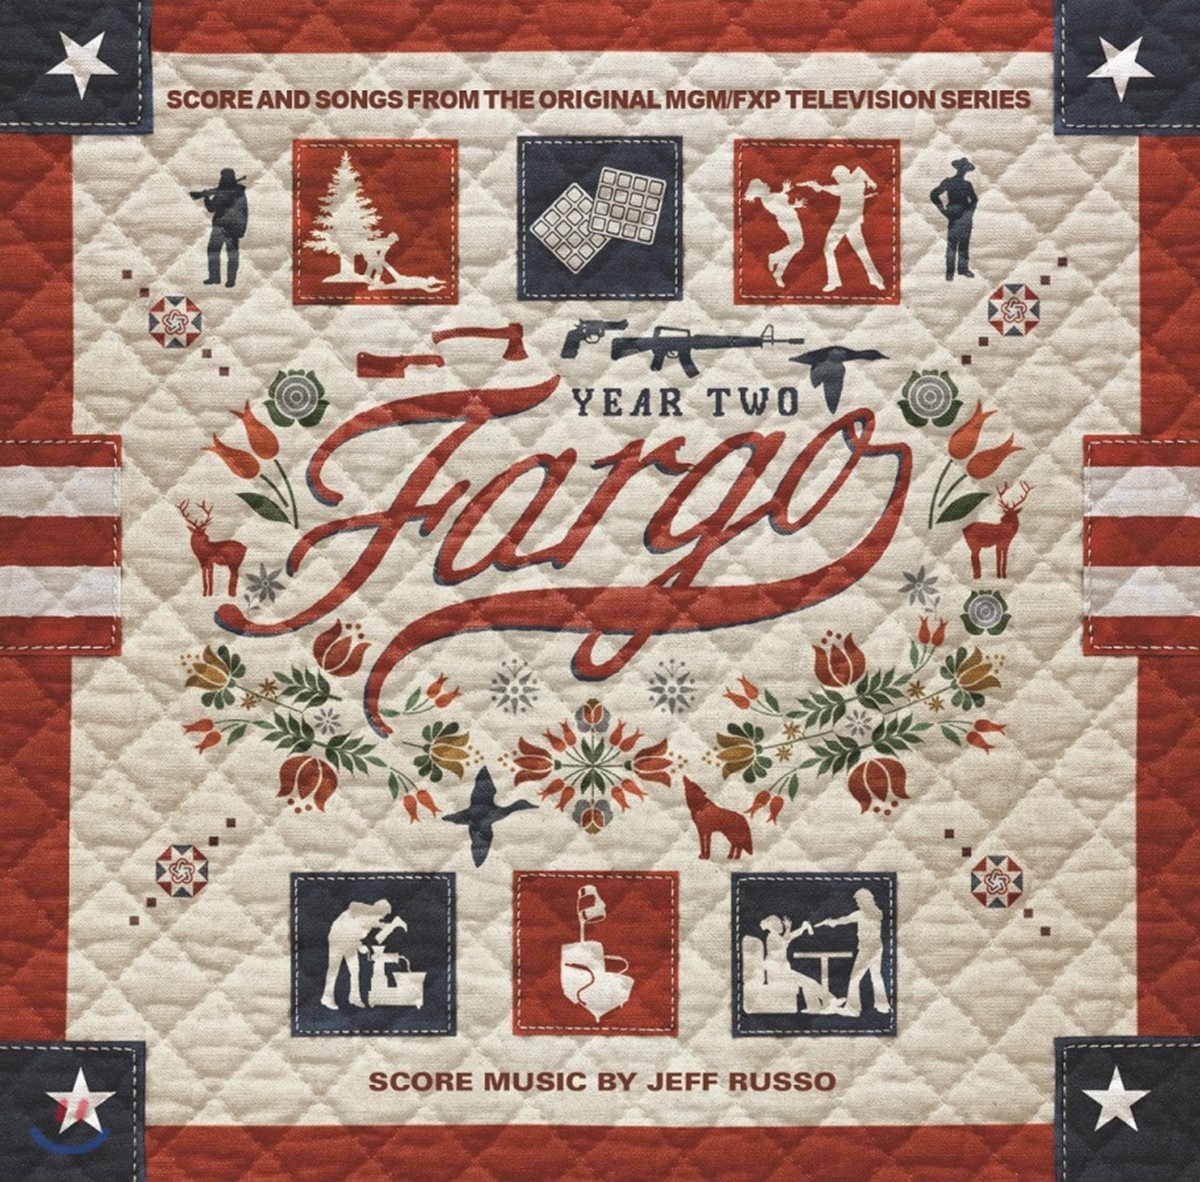 파고 시즌2 드라마 음악 (Fargo Year Two OST by Jeff Russo 제프 루소) [2LP]